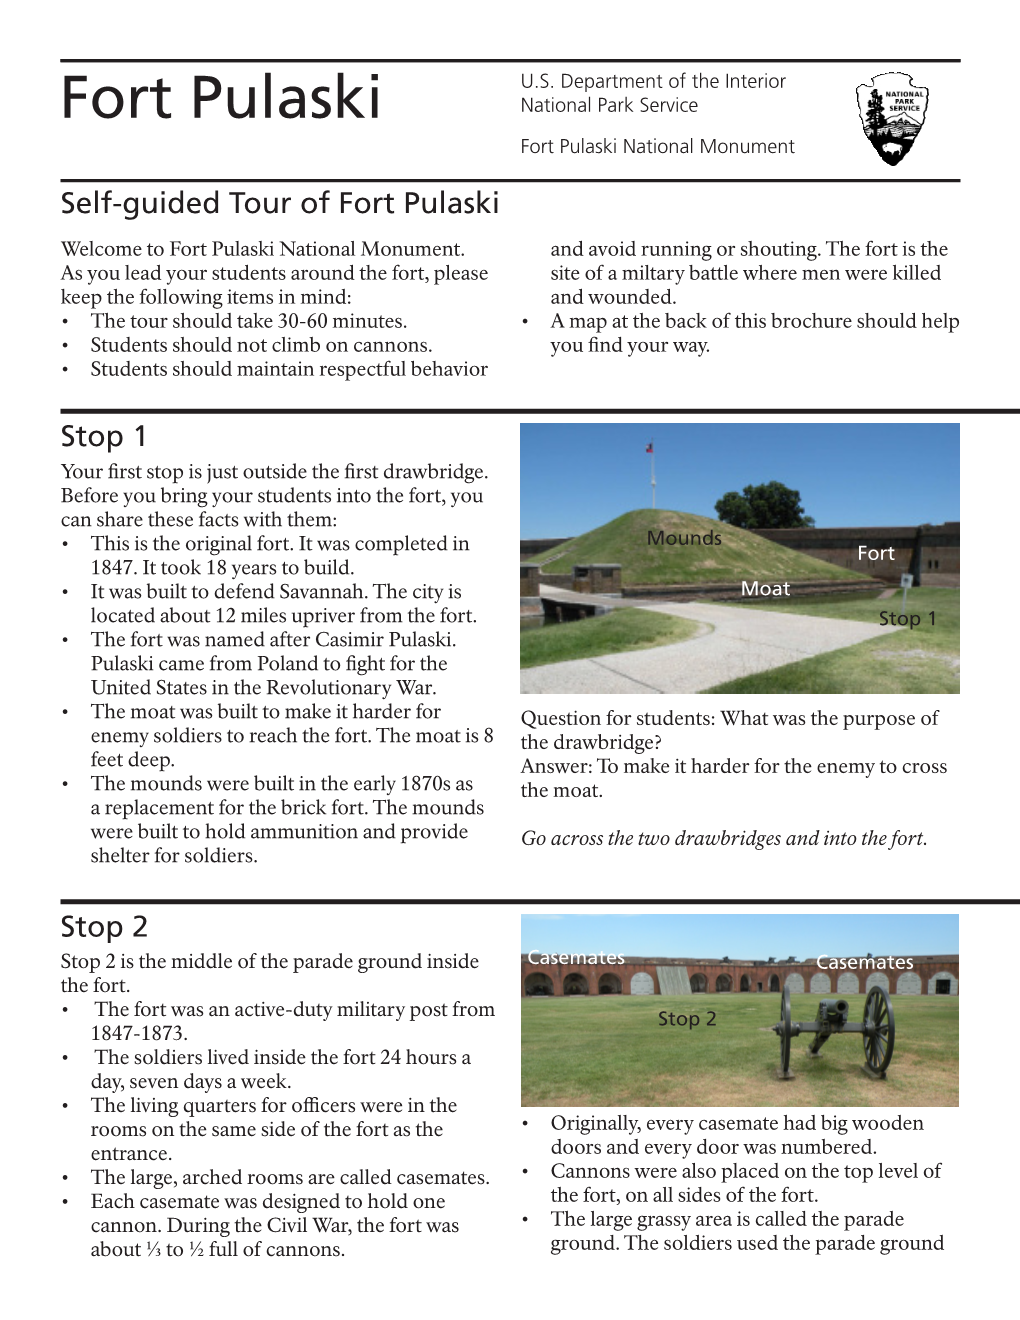 Fort Pulaski National Park Service Fort Pulaski National Monument